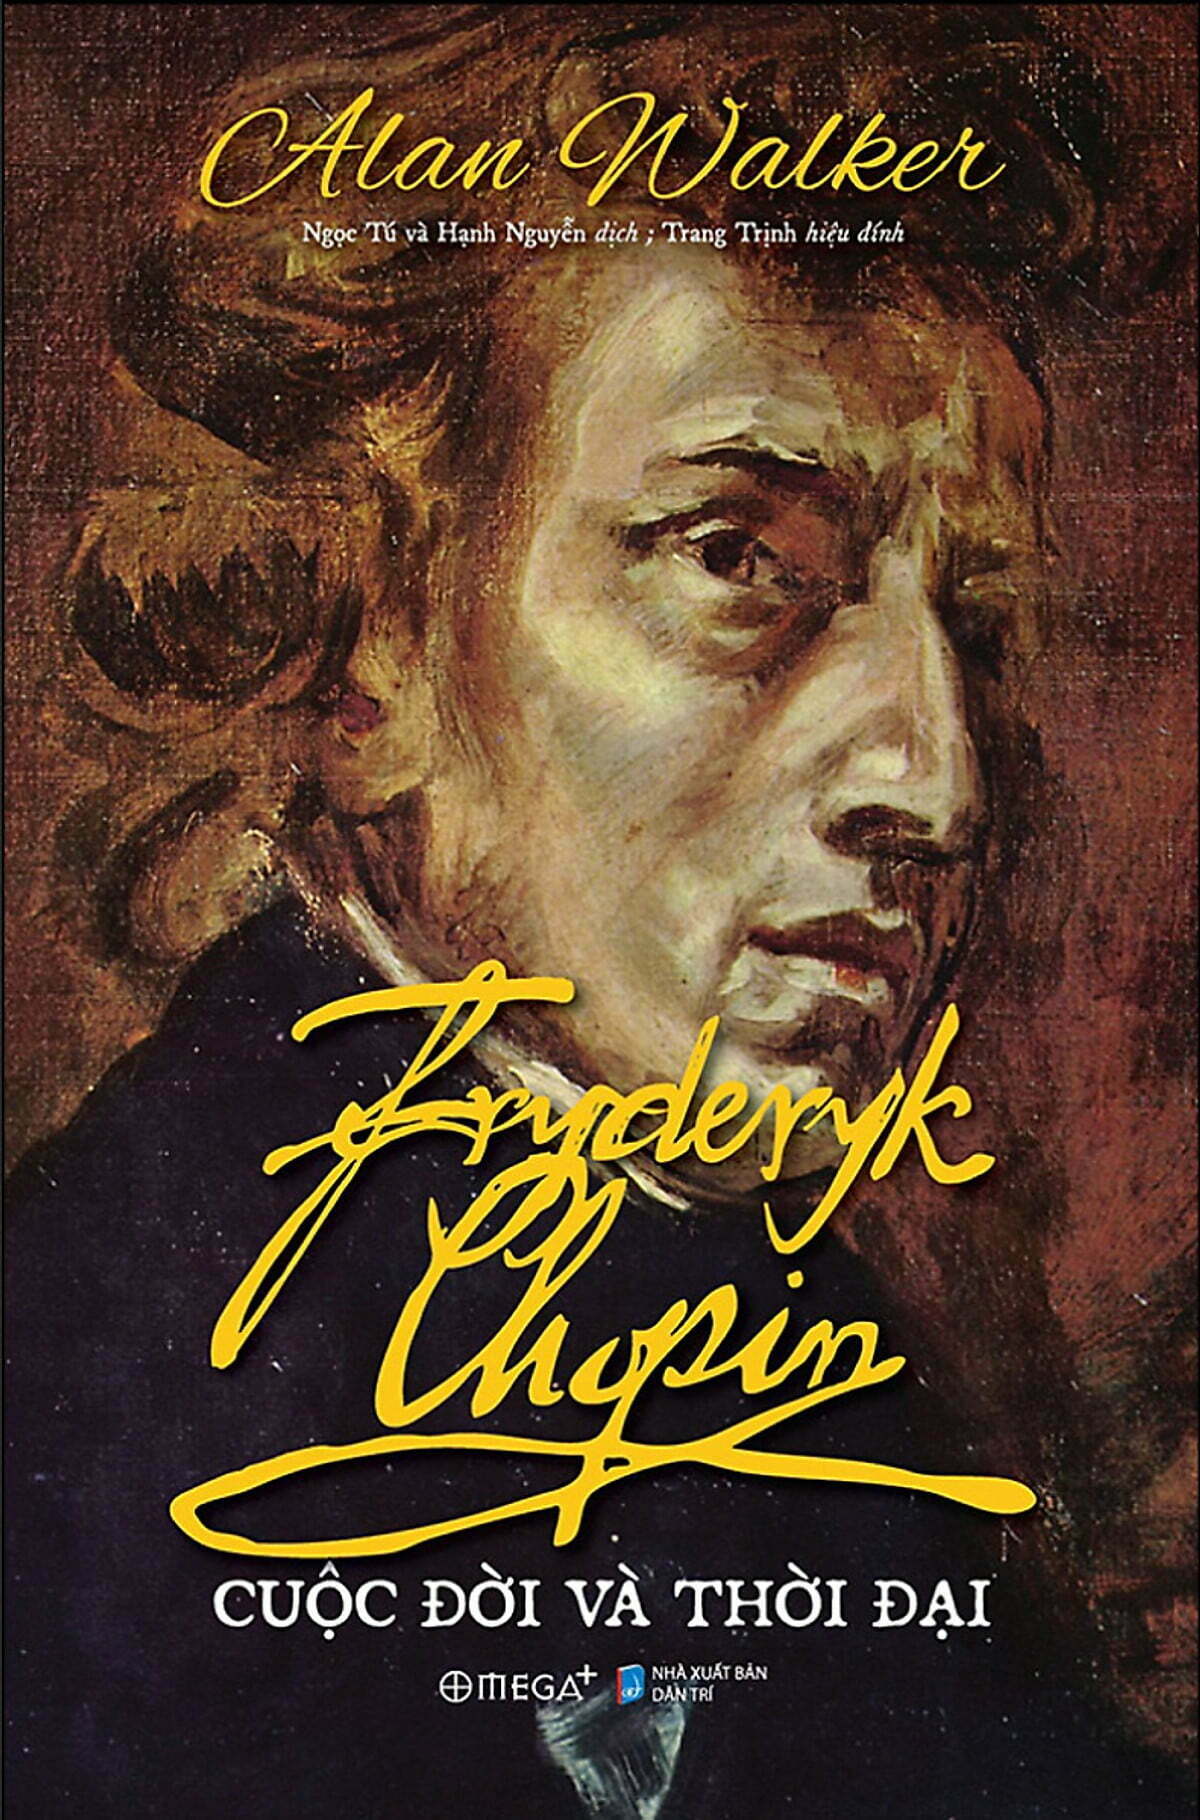 Fryderyk Chopin: Cuộc đời và thời đại - Tác giả Alan Walker